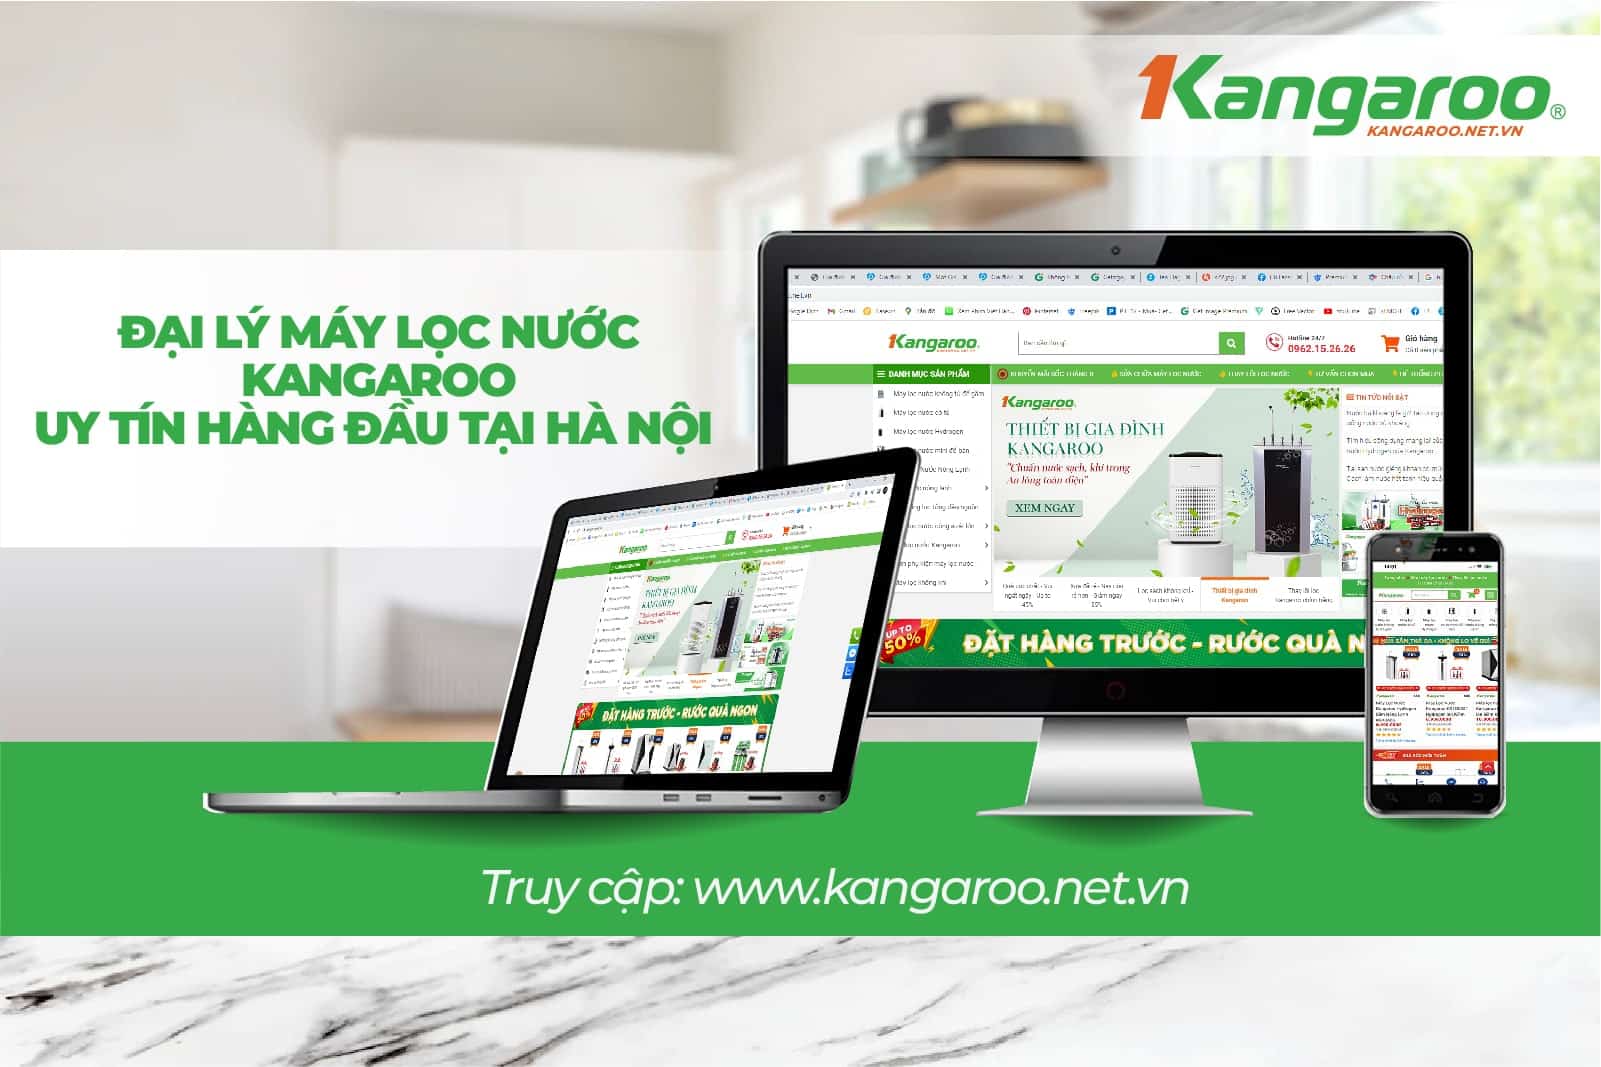 Kangaroo.net.vn địa chỉ mua máy lọc nước KG100HU chính hãng uy tín nhất hiện nay 